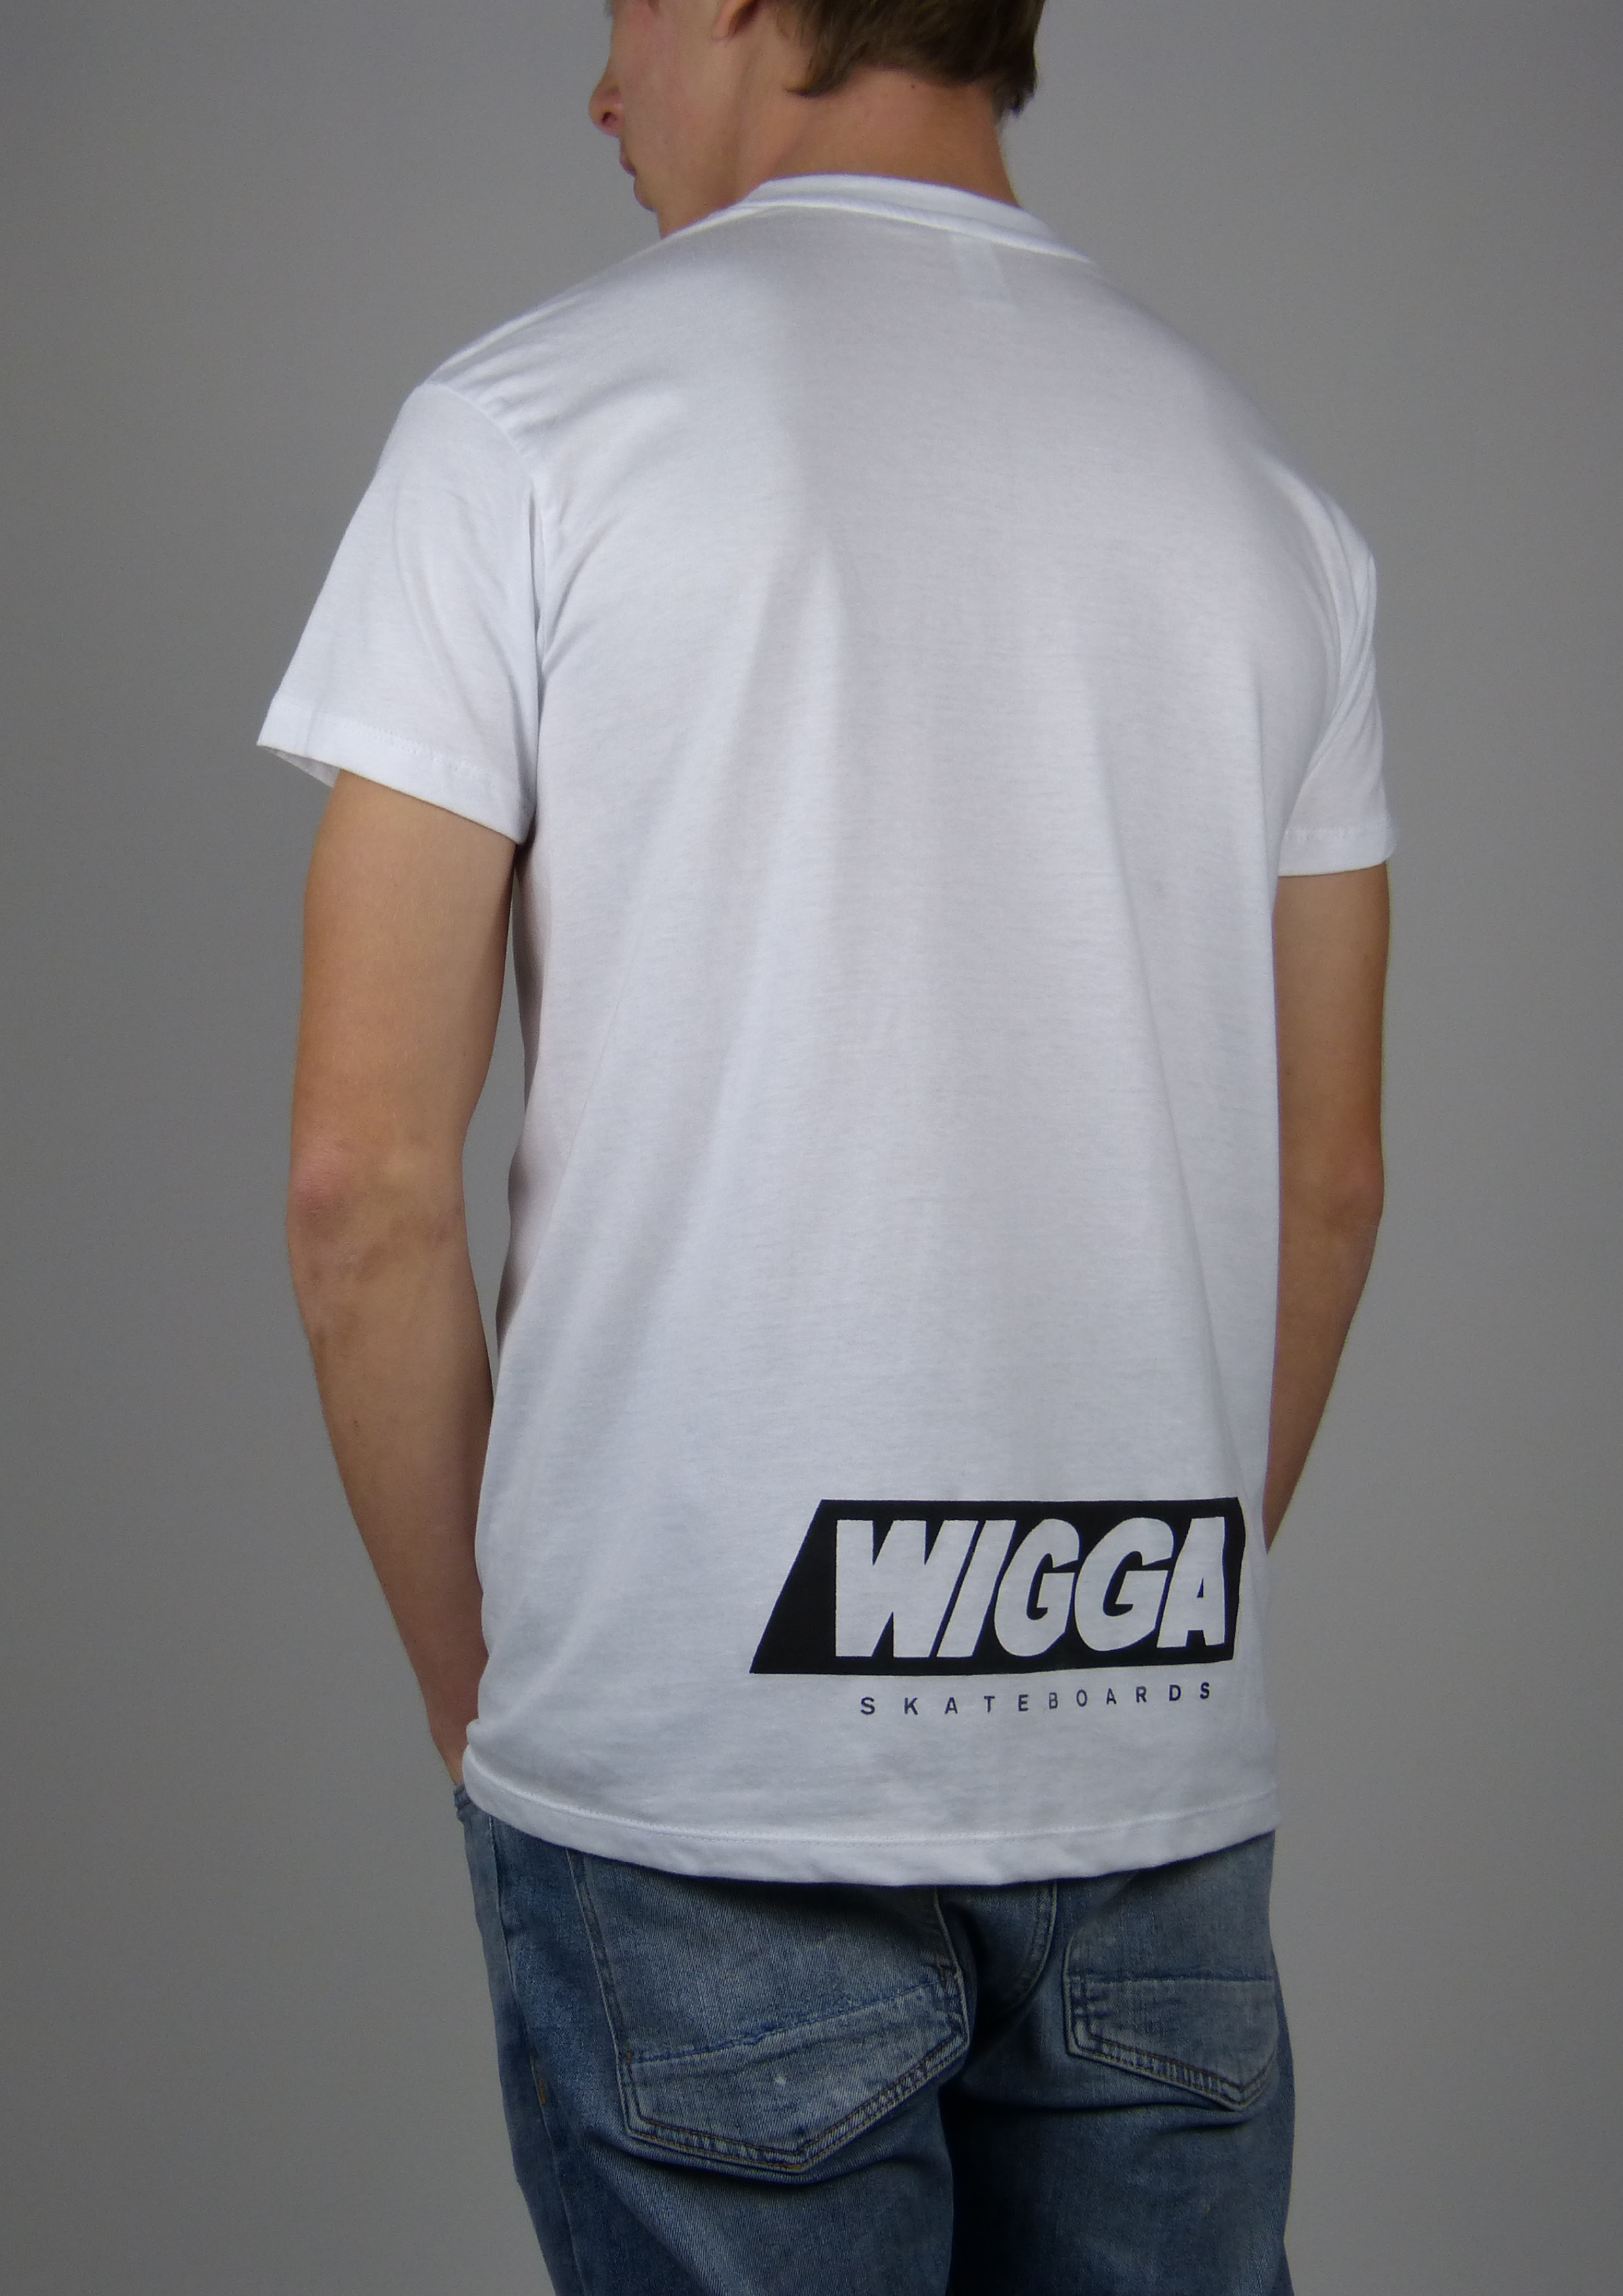 vacuüm ik draag kleding Voorschrijven T-shirts – WIGGA